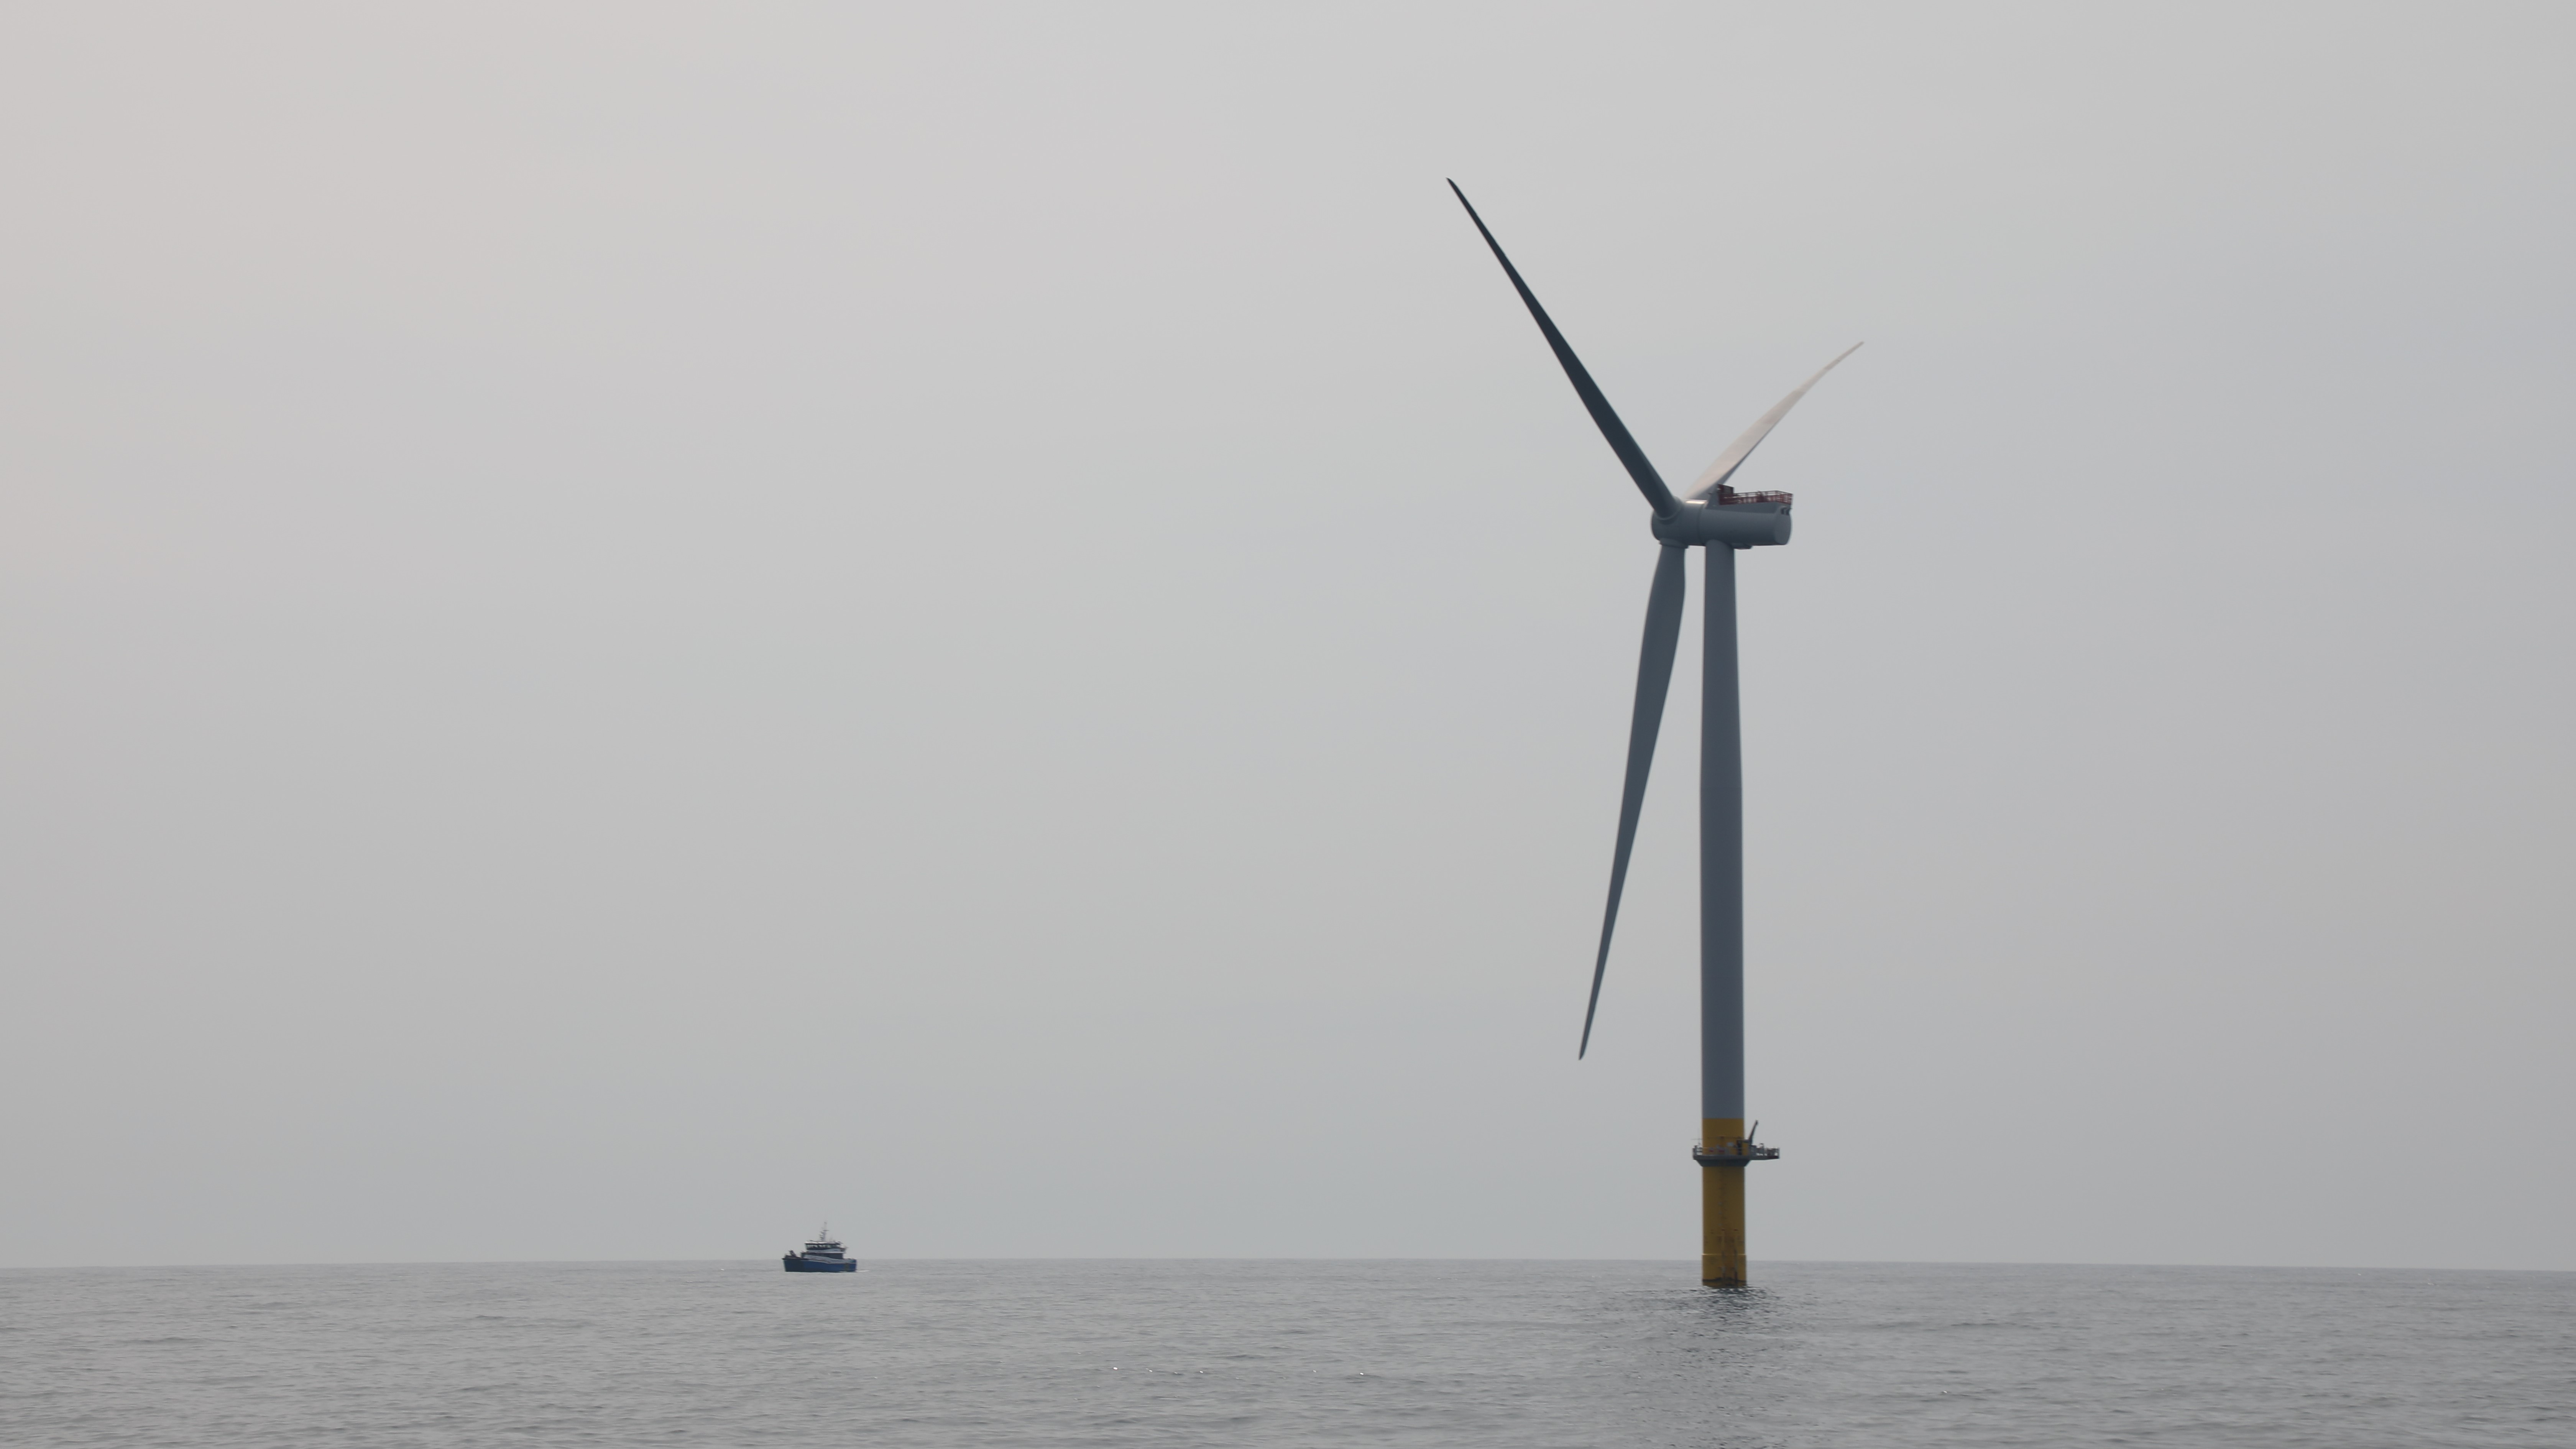 A Dominion Energy wind turbine off Virginia's coast. (Image: Laura Philion/WHRO News)